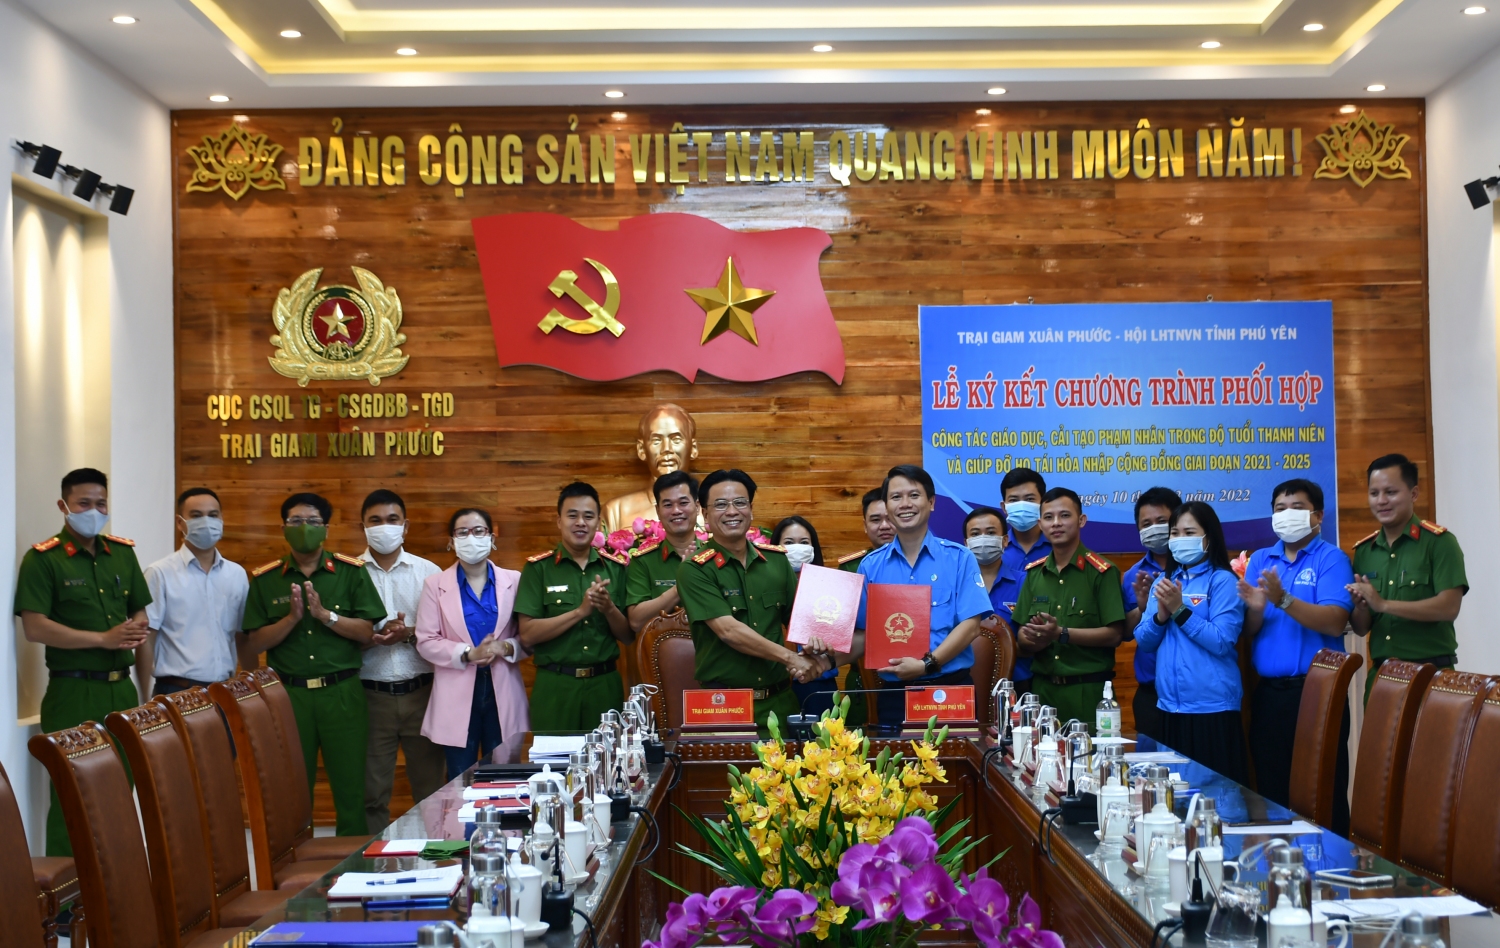 Hội LHTN Việt Nam tỉnh Phú Yên và Trại giam Xuân Phước ký kết Chương trình phối hợp công tác giáo dục, cải tạo phạm nhân trong độ tuổi thanh niên và giúp đỡ họ tái hòa nhập cộng đồng giai đoạn 2021- 2025.